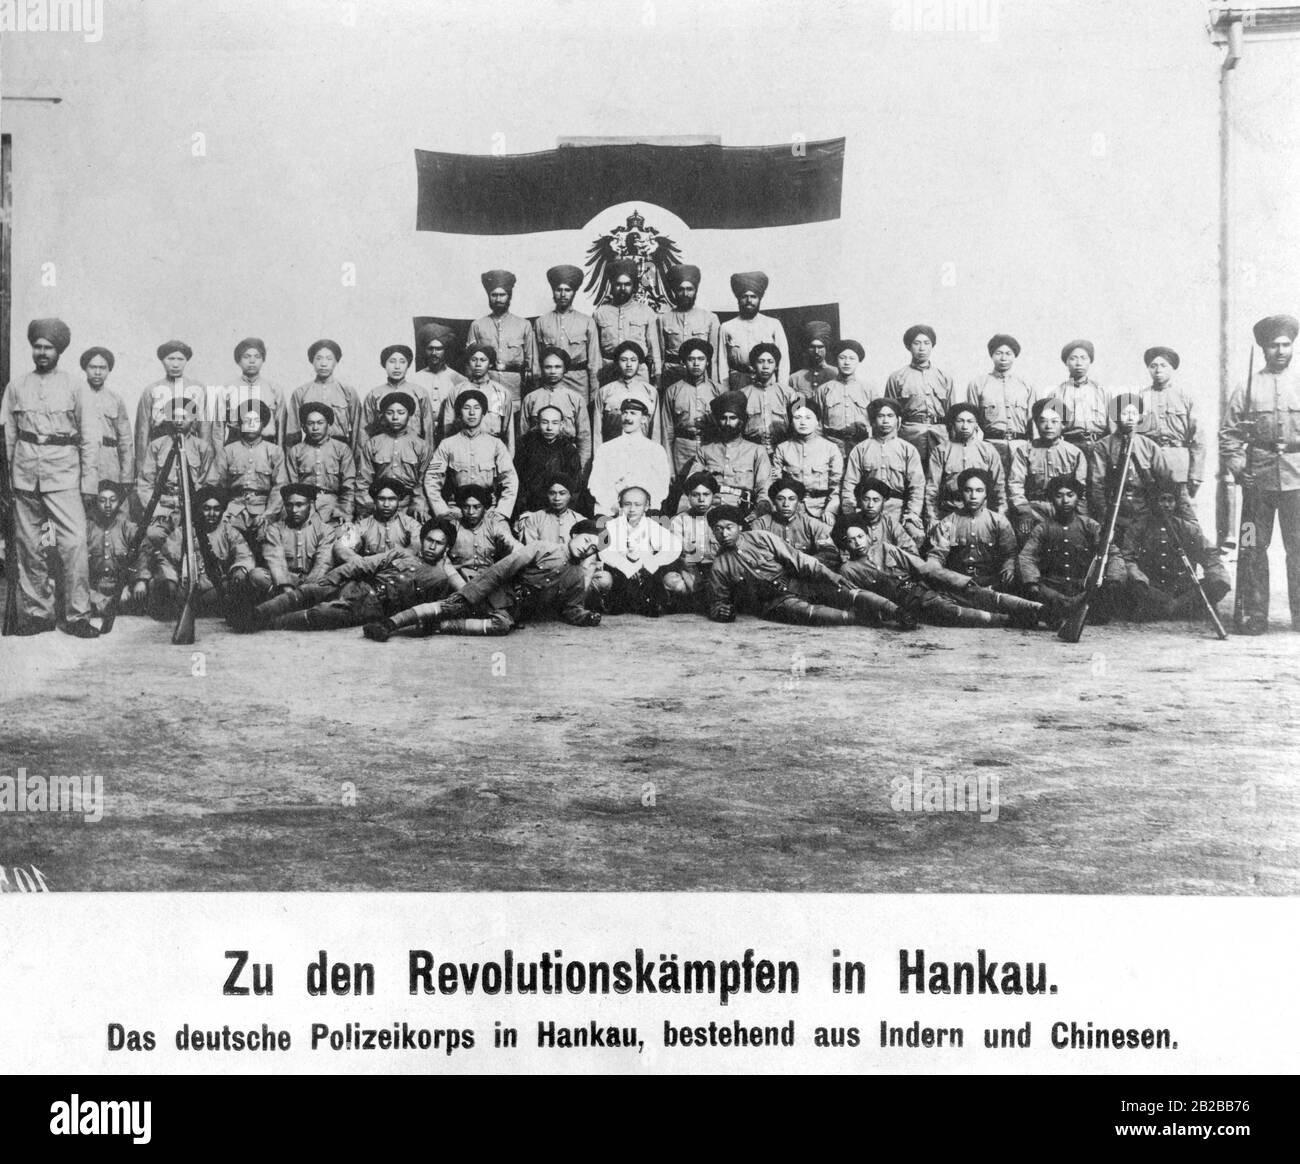 Photo de groupe du corps de police allemand à Hankou pendant la Révolution chinoise. Banque D'Images